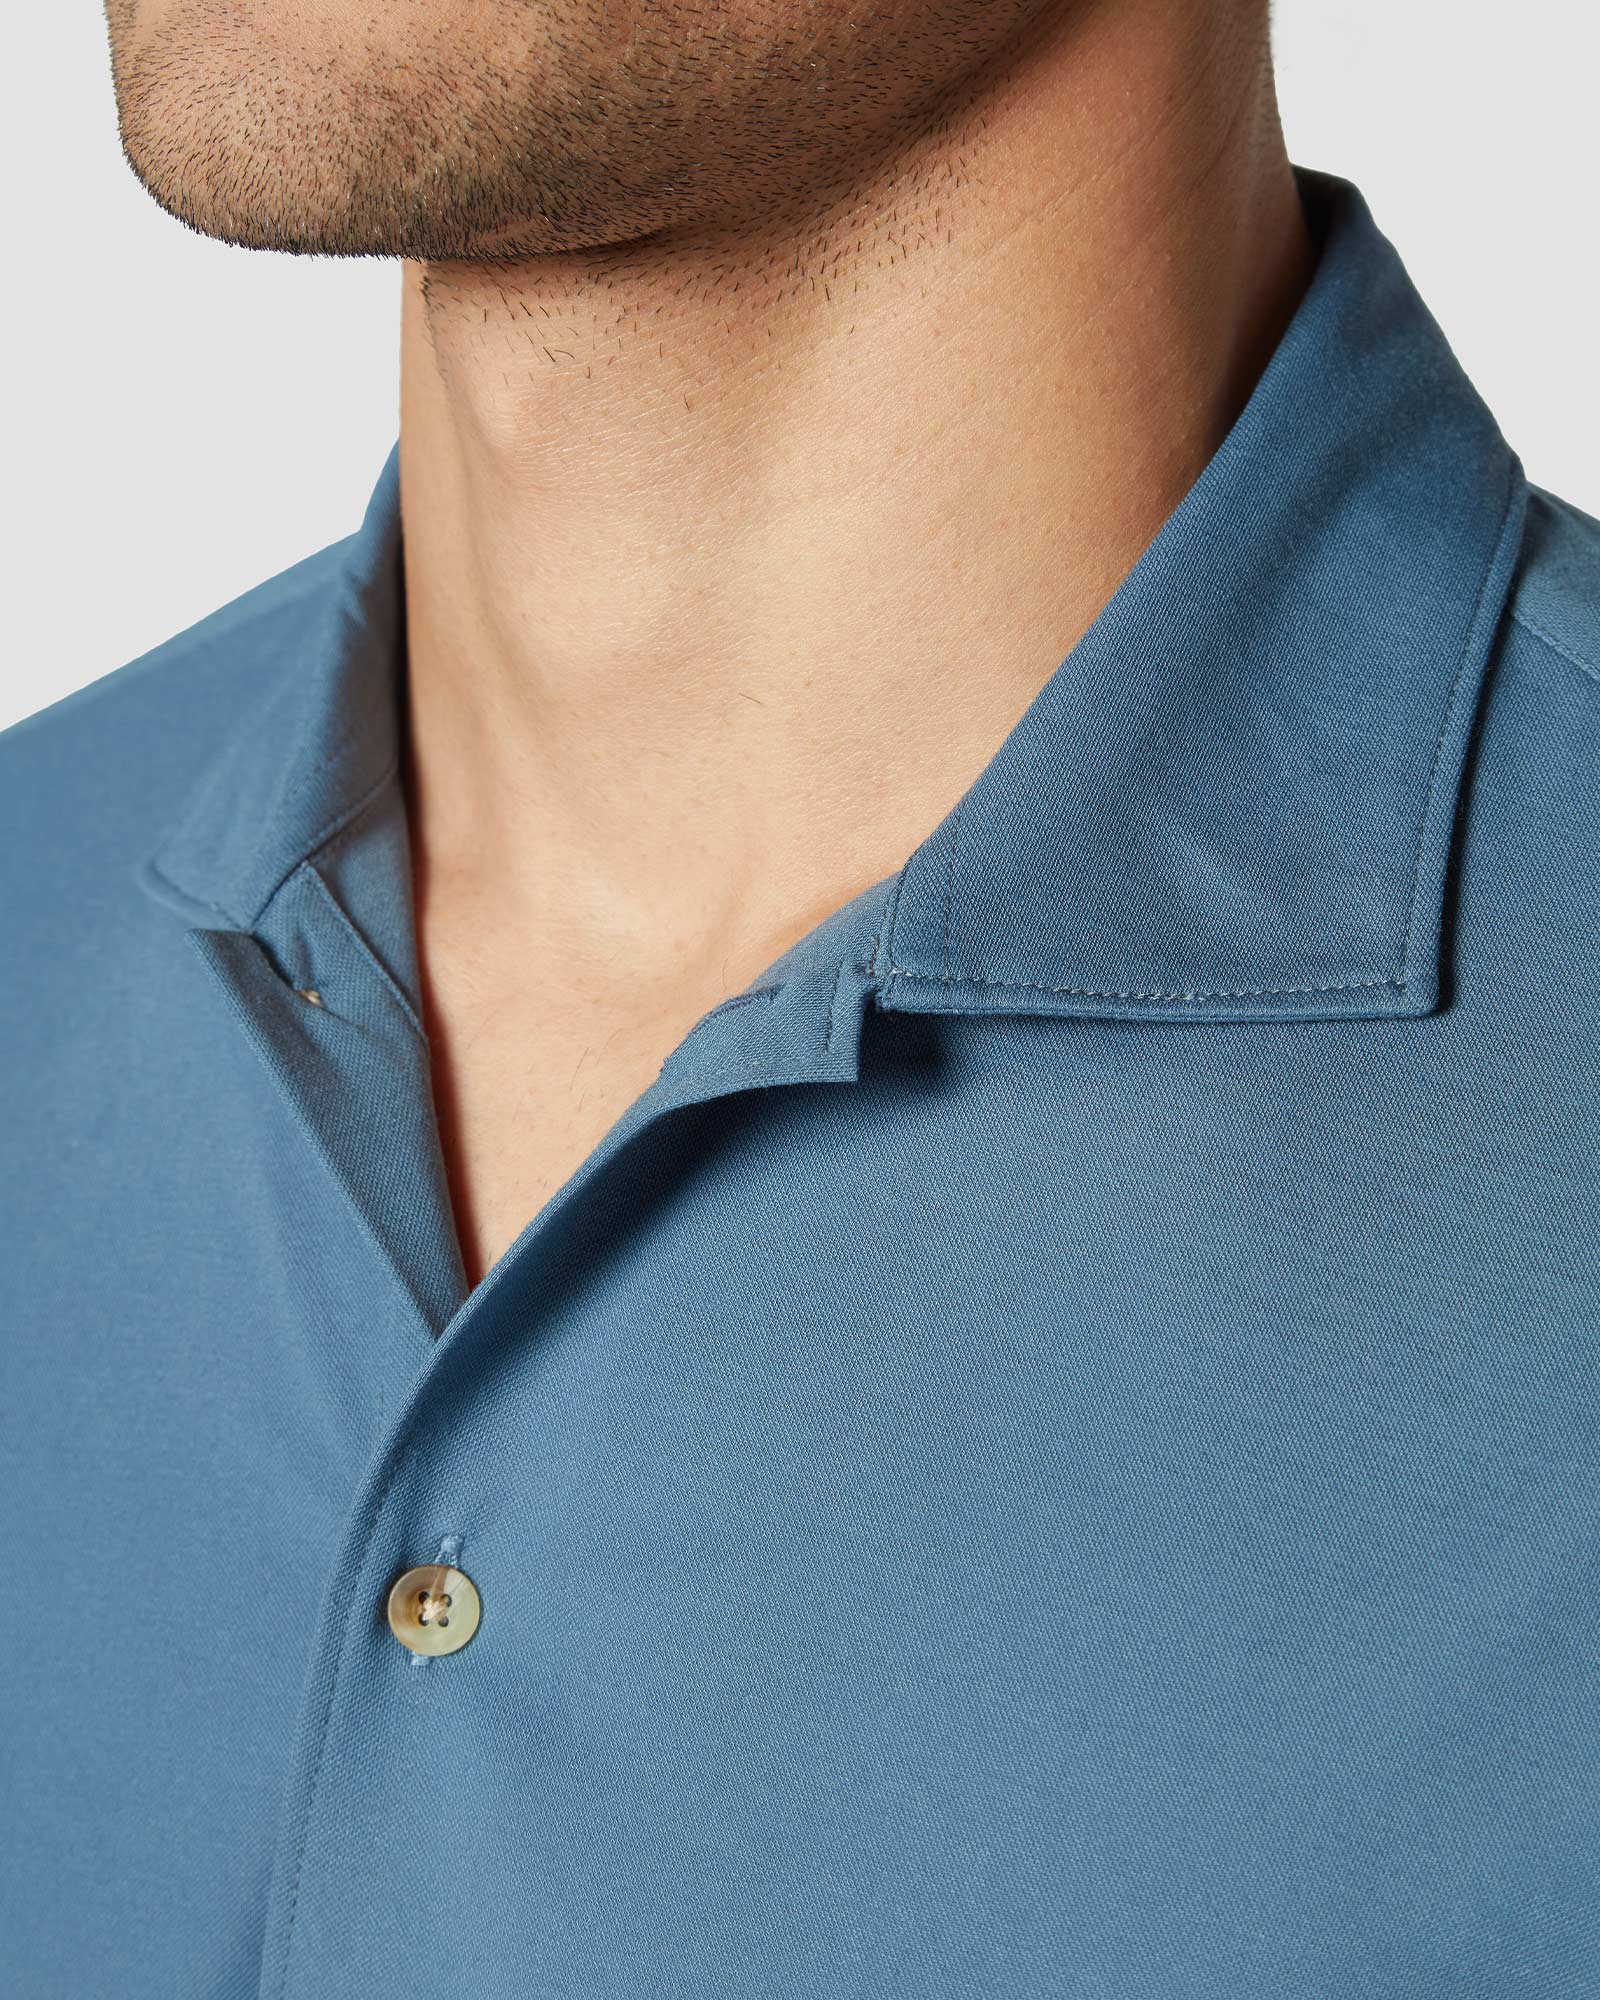 Bombay Shirt Company - Lapis Lazuli Knit Shirt